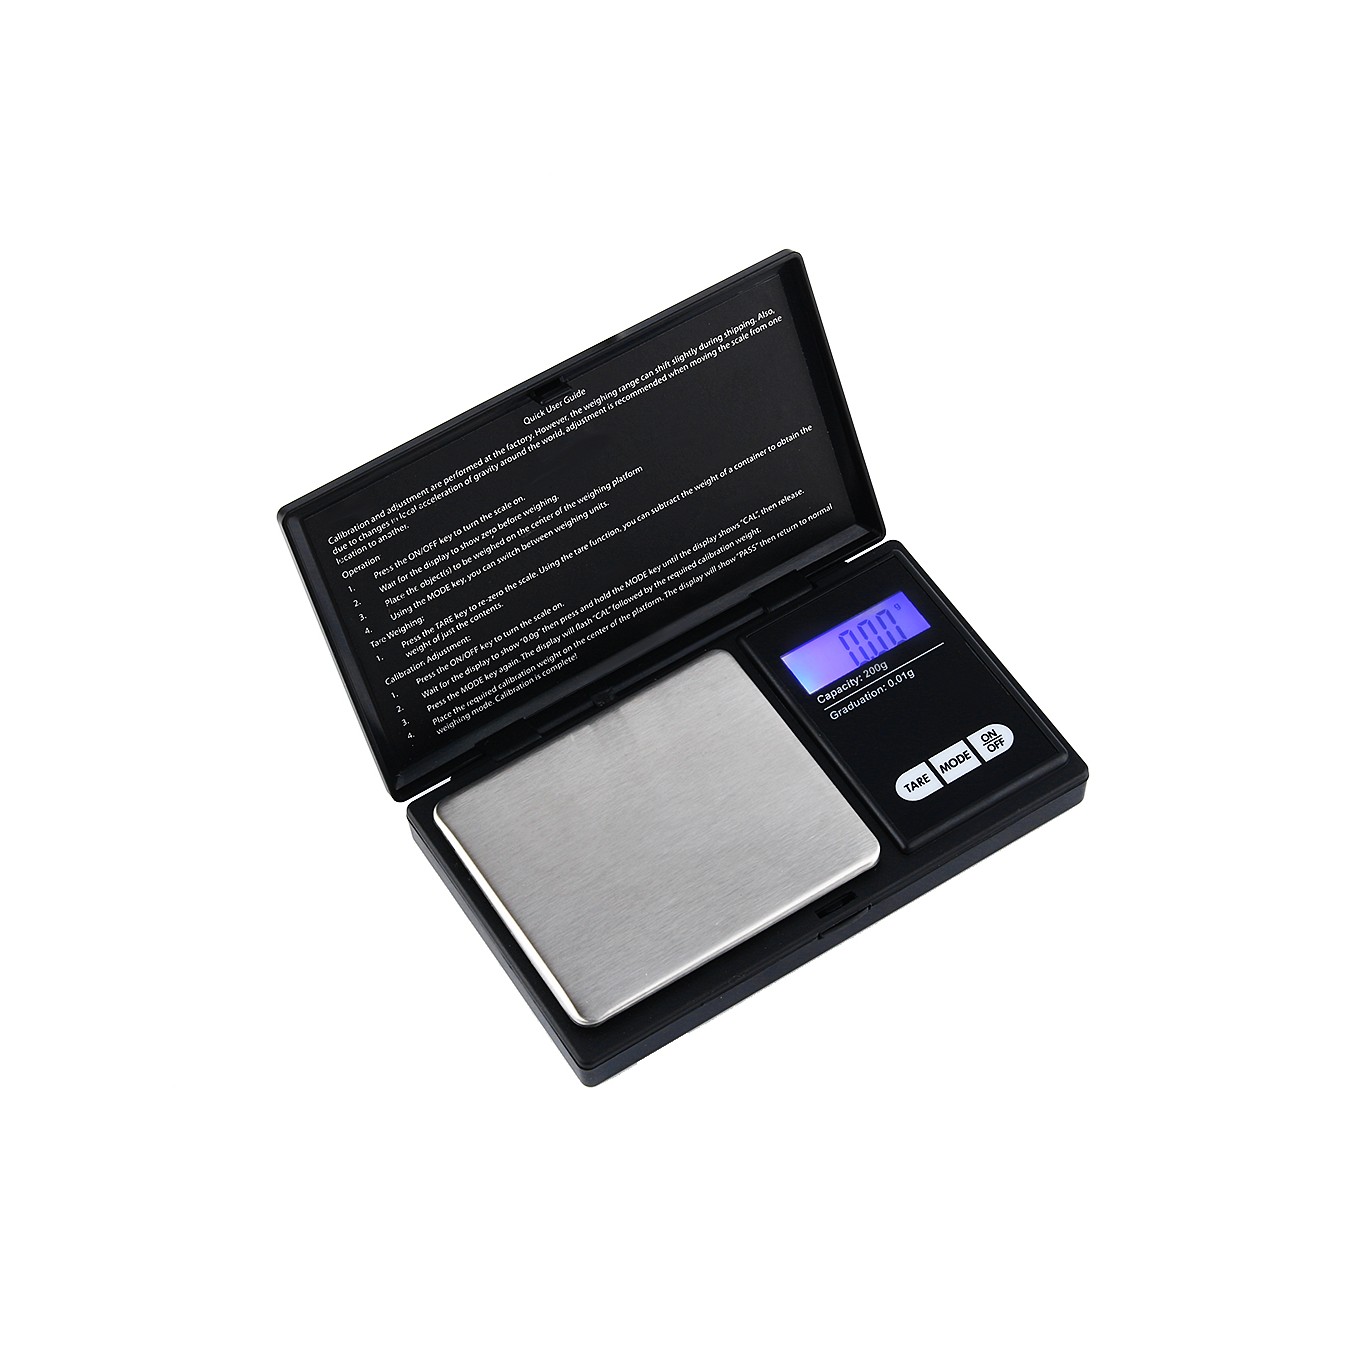 Bilancia di precisione digitale, con display touch, con un'approssimazione  di 0,01 g - PEARL